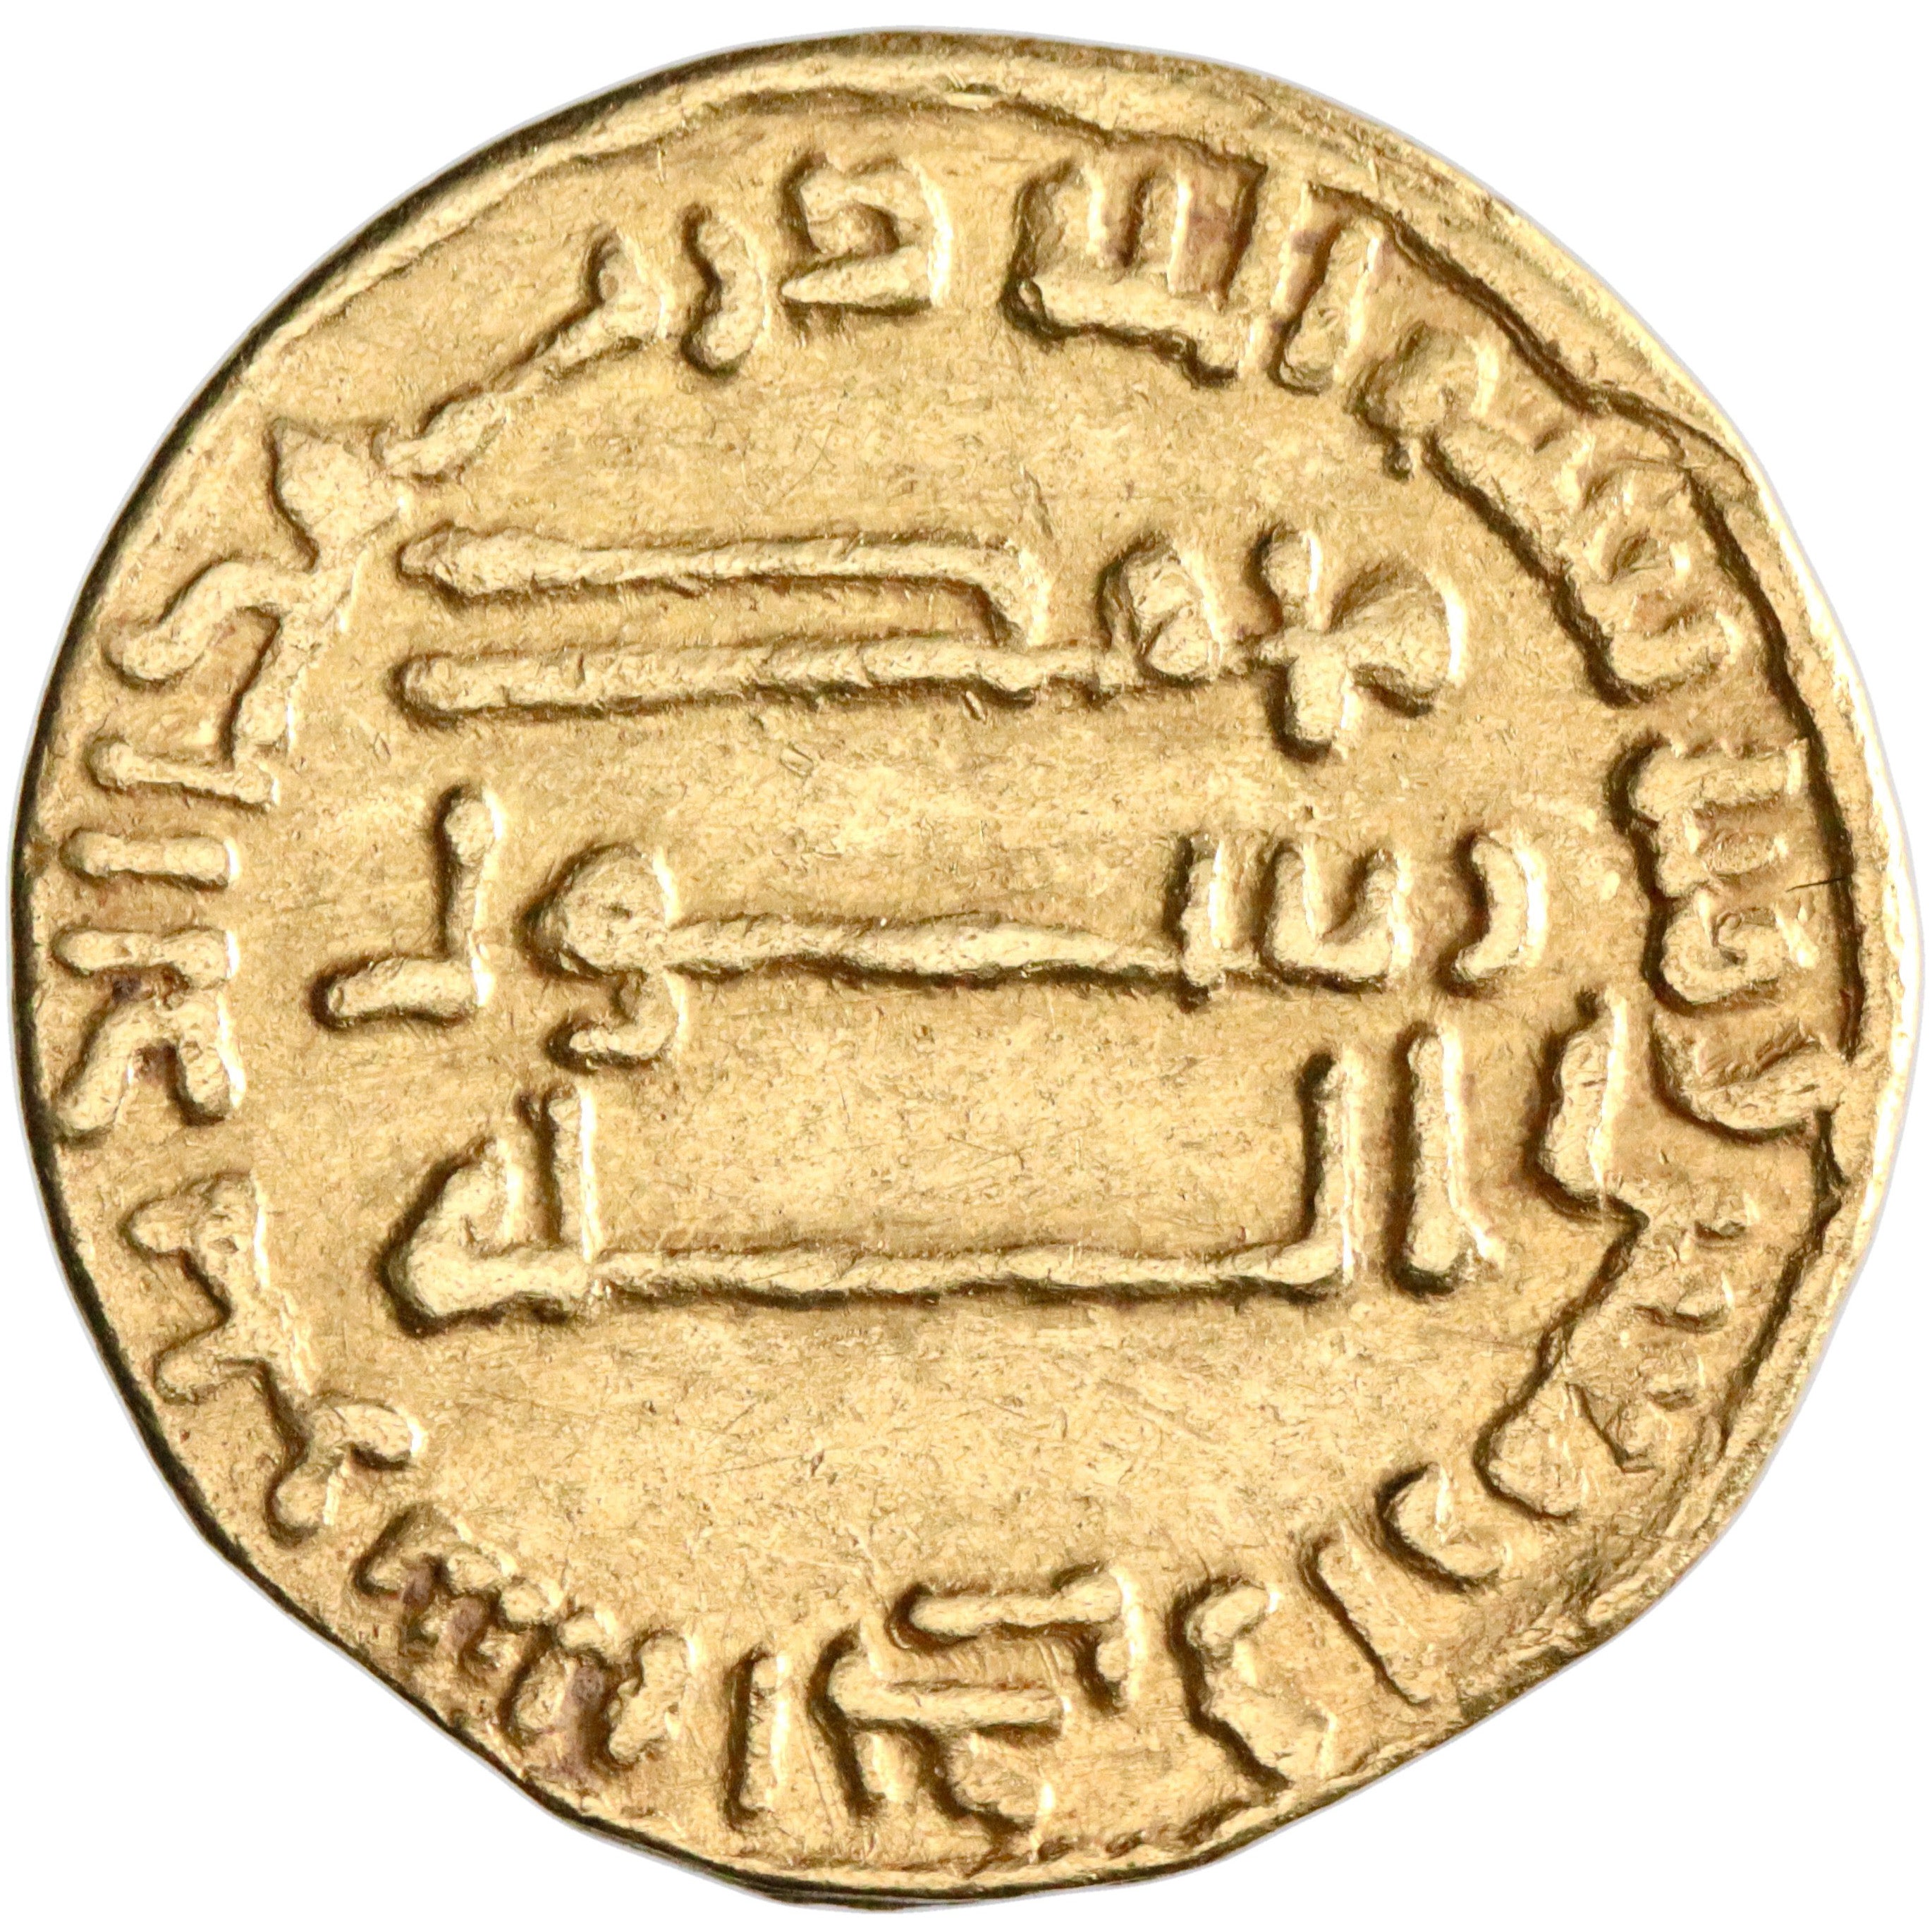 Abbasid, al-Mansur, gold dinar, AH 141